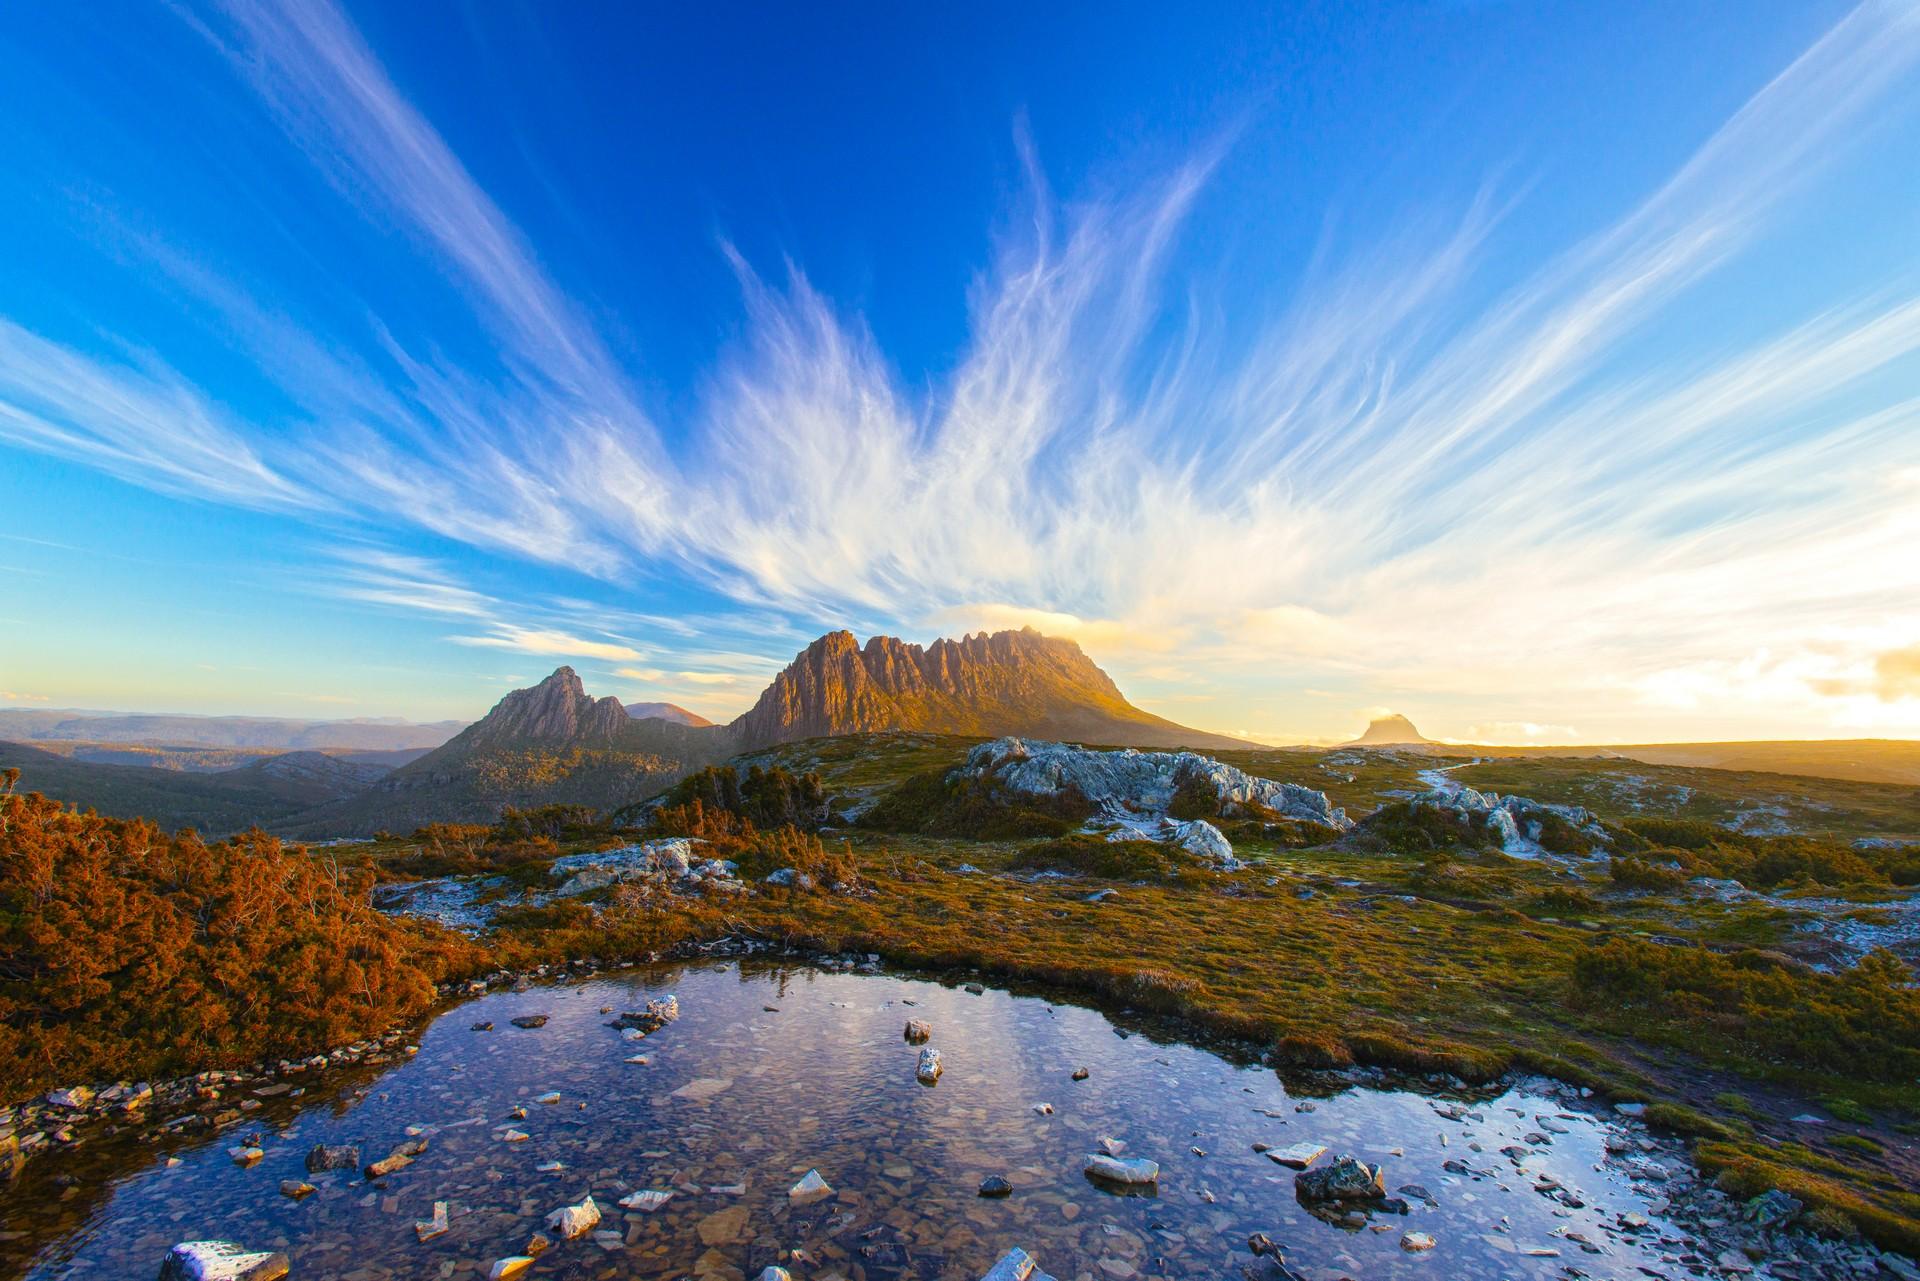 Mountain range in Tasmania at sunset time